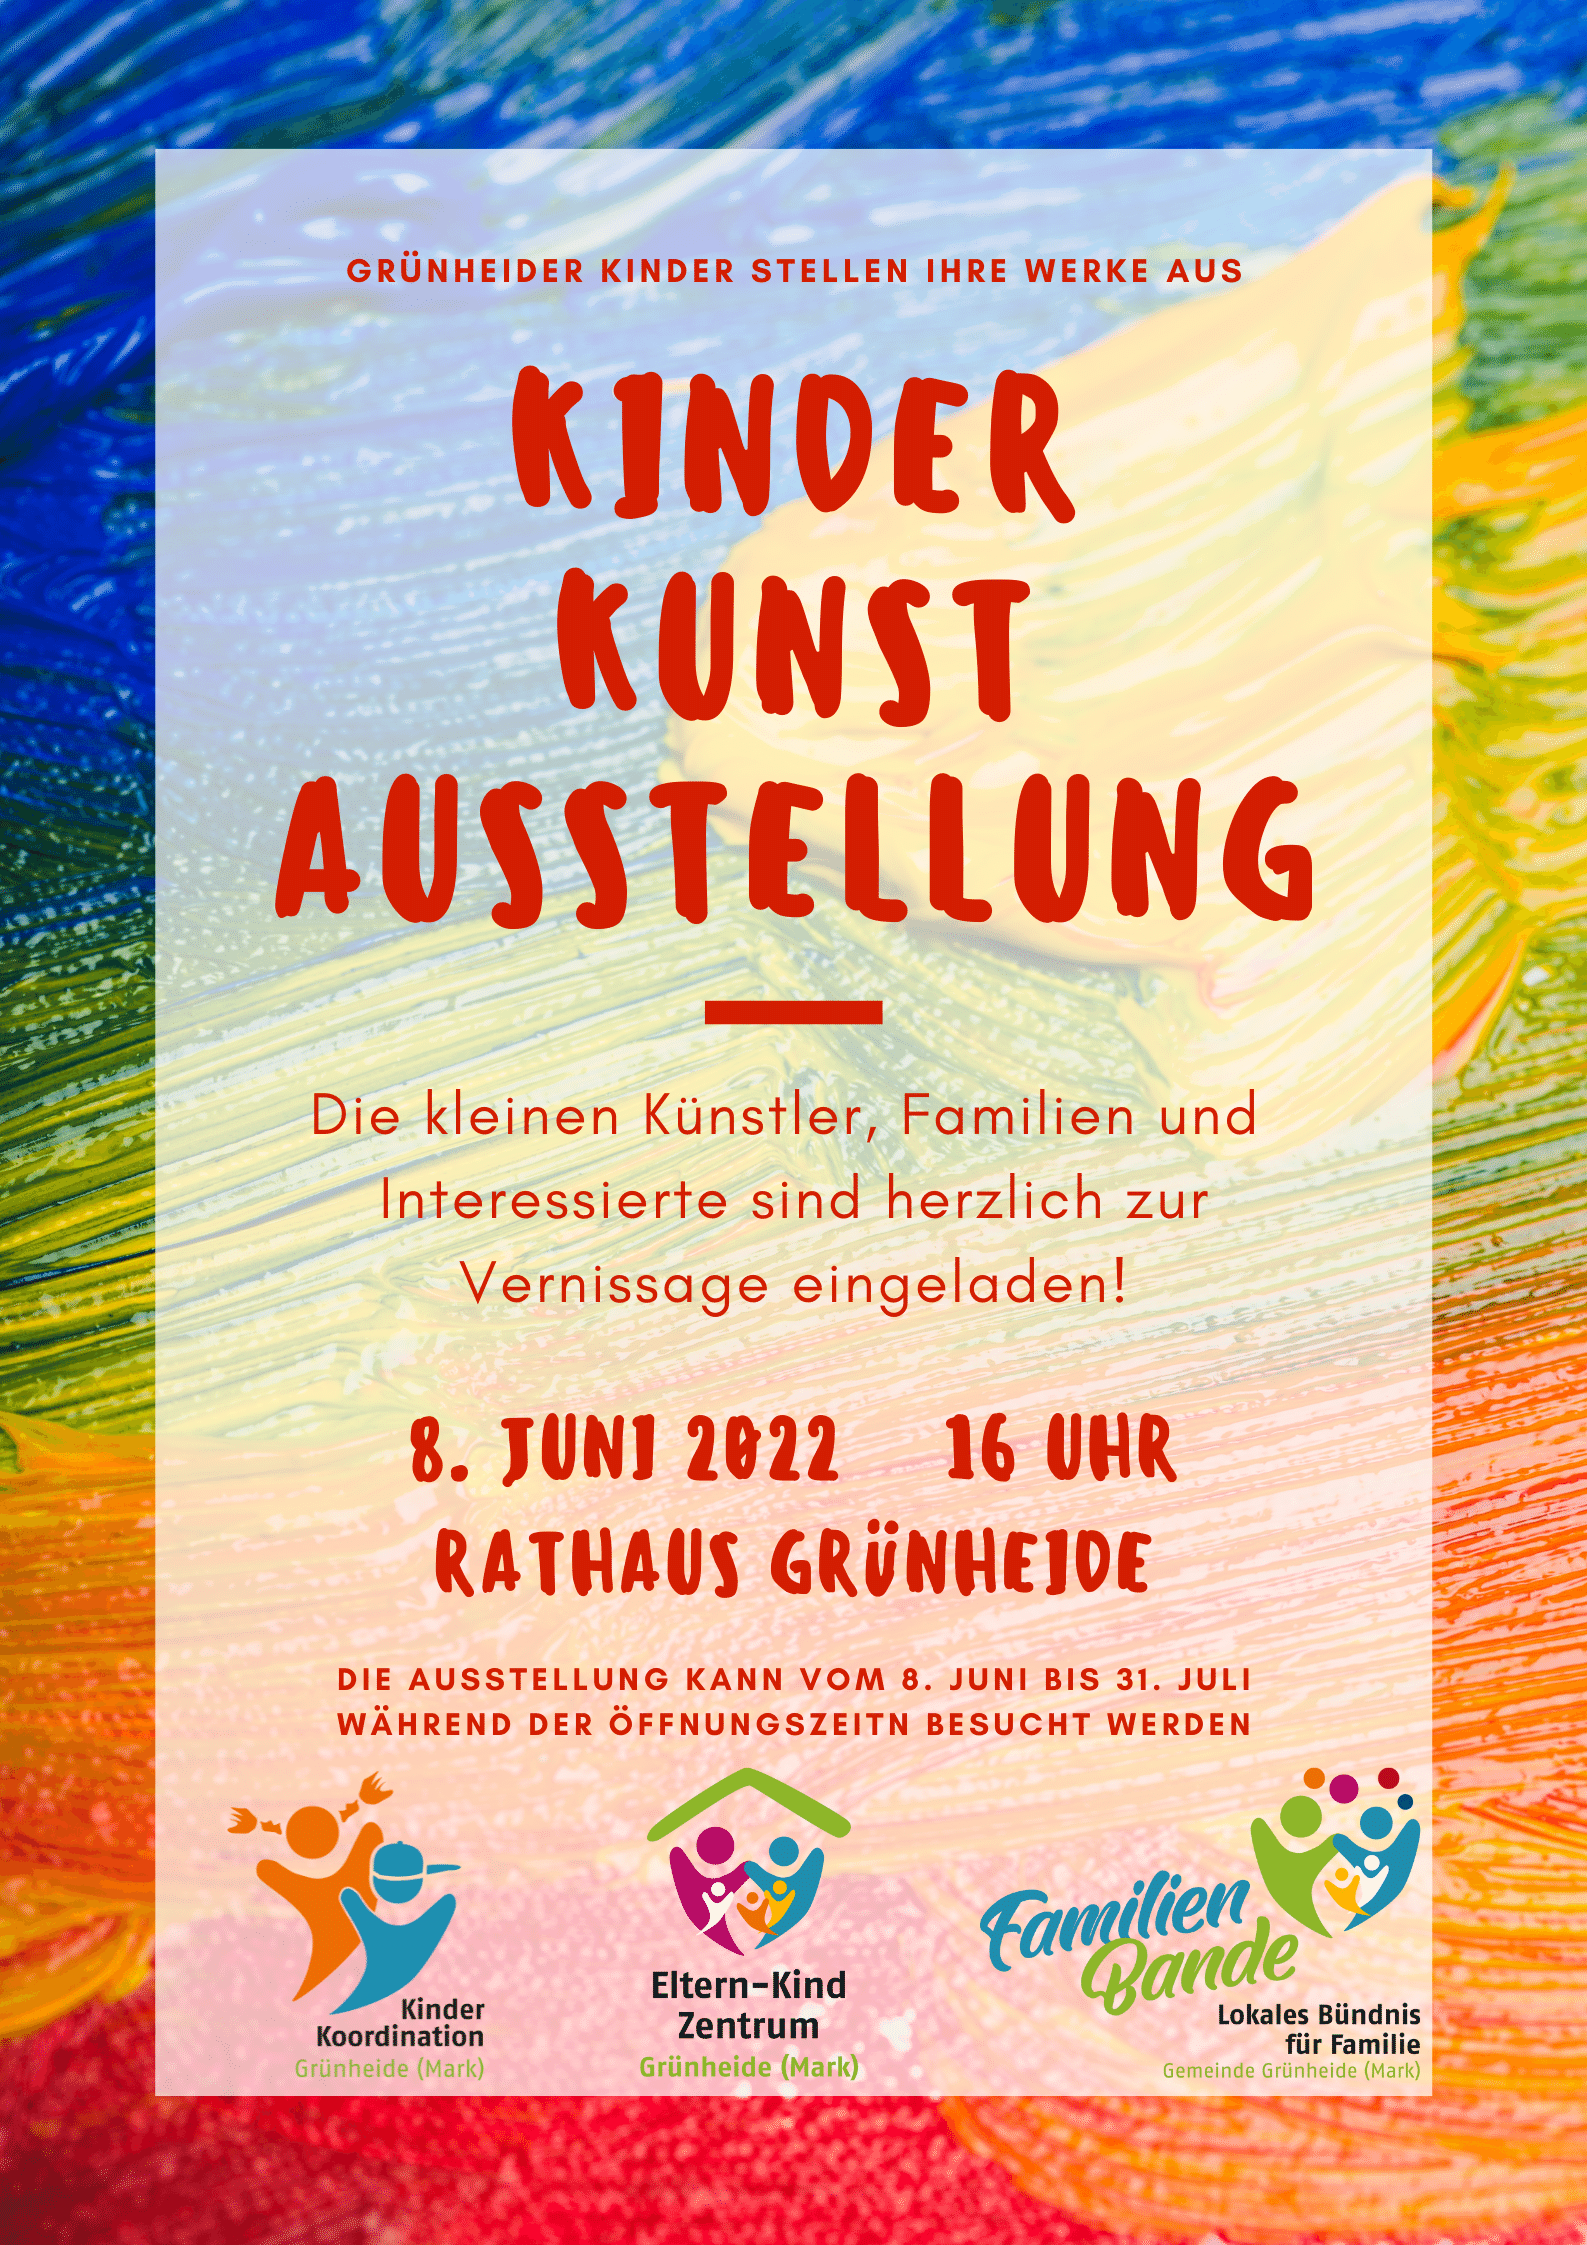 Er­öff­nung der Kinder-Kunst-Aus­stel­lung im Rathaus Grünheide